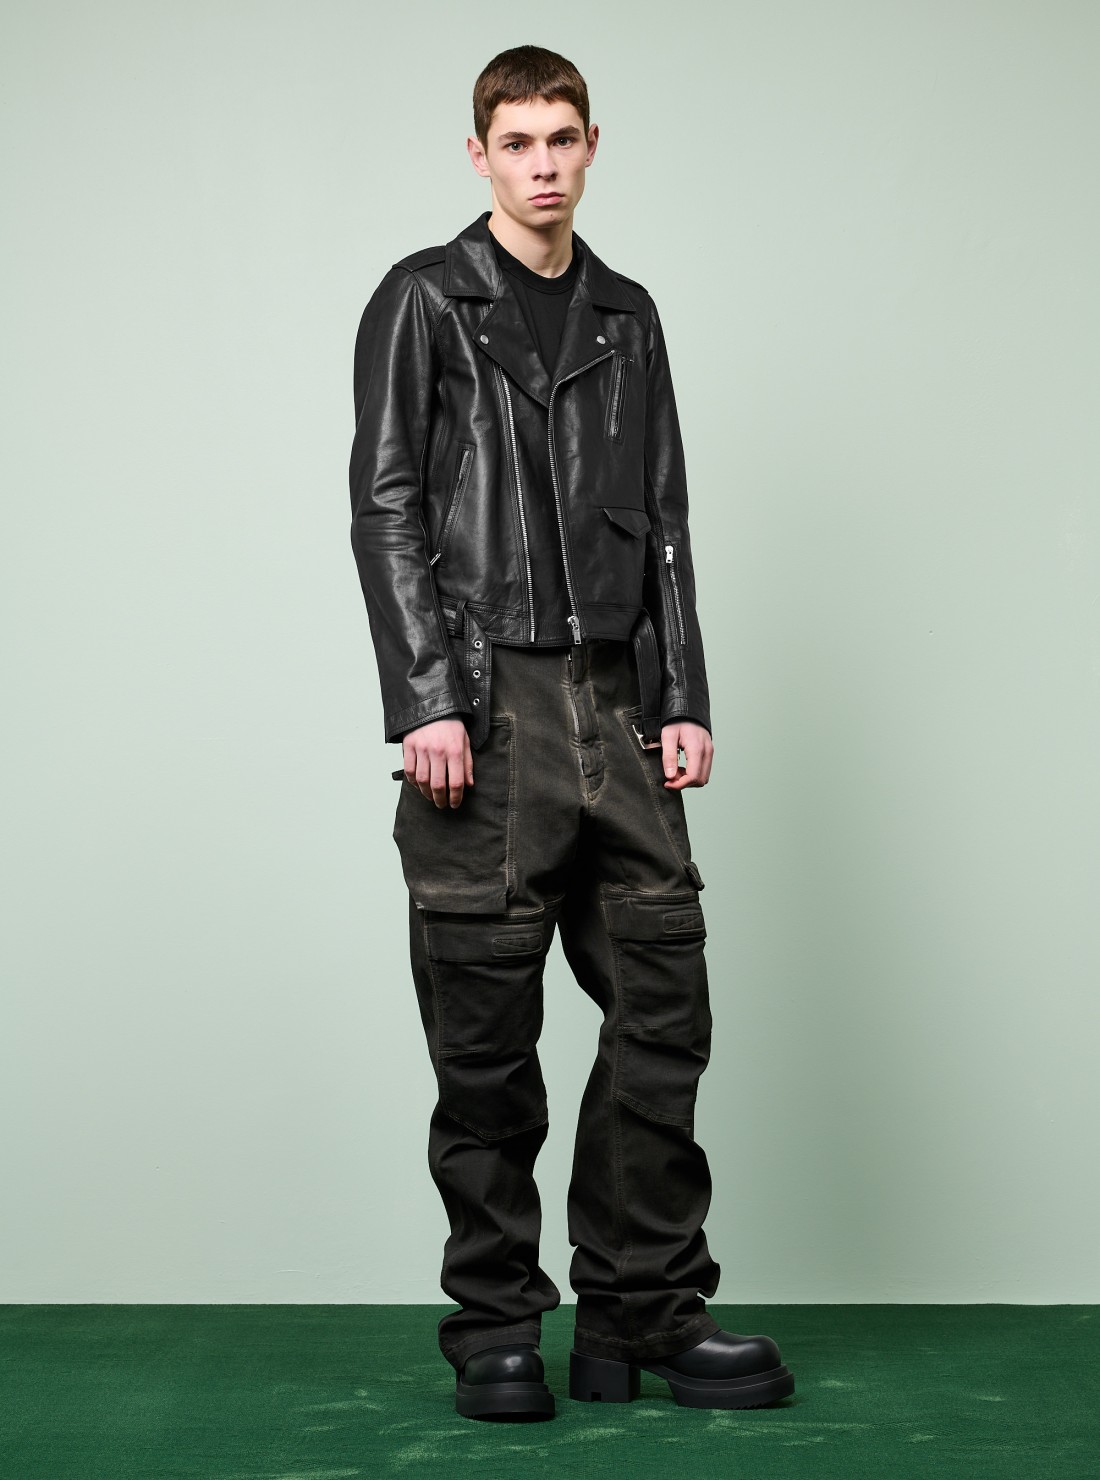 Lukes Leather Jacket